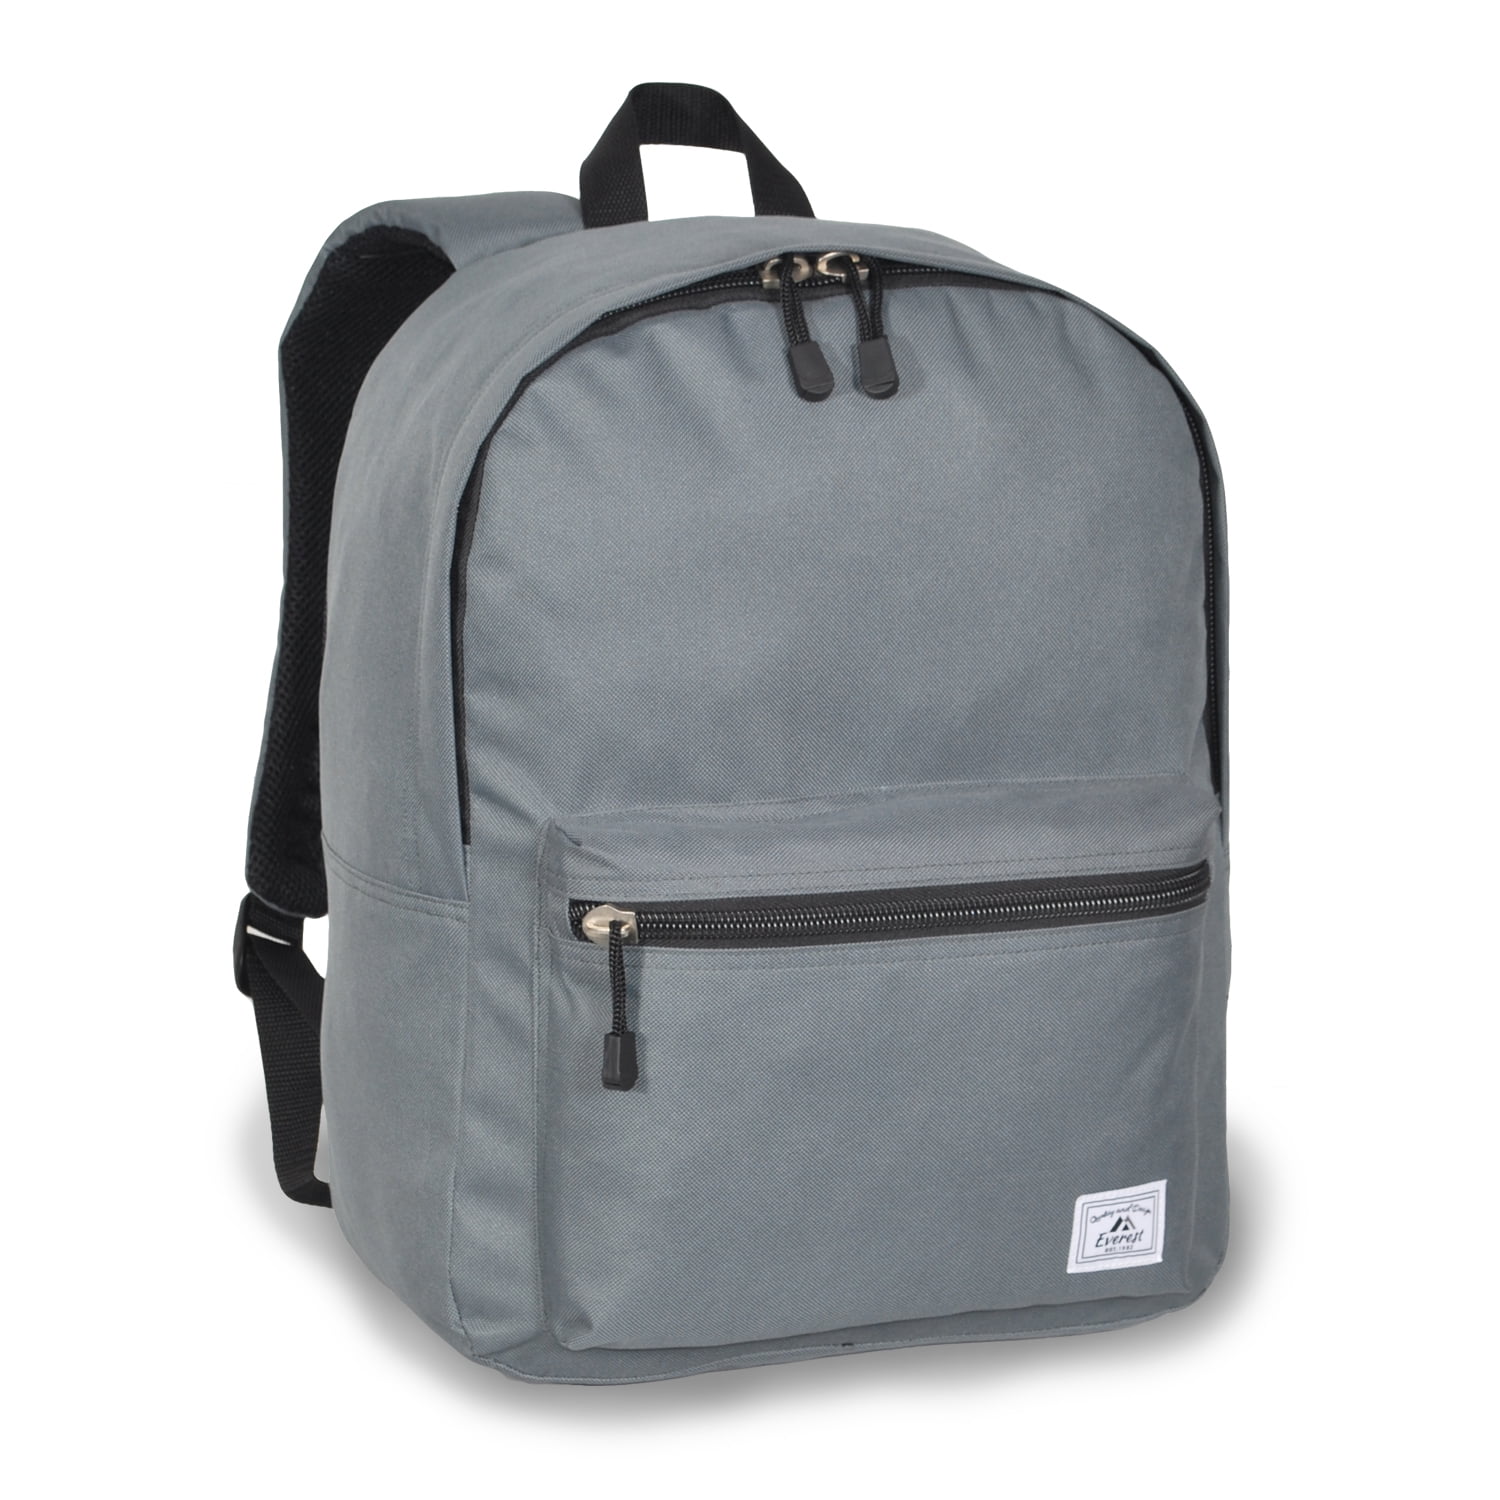 Everest Deluxe Backpack, Gray - Walmart.com